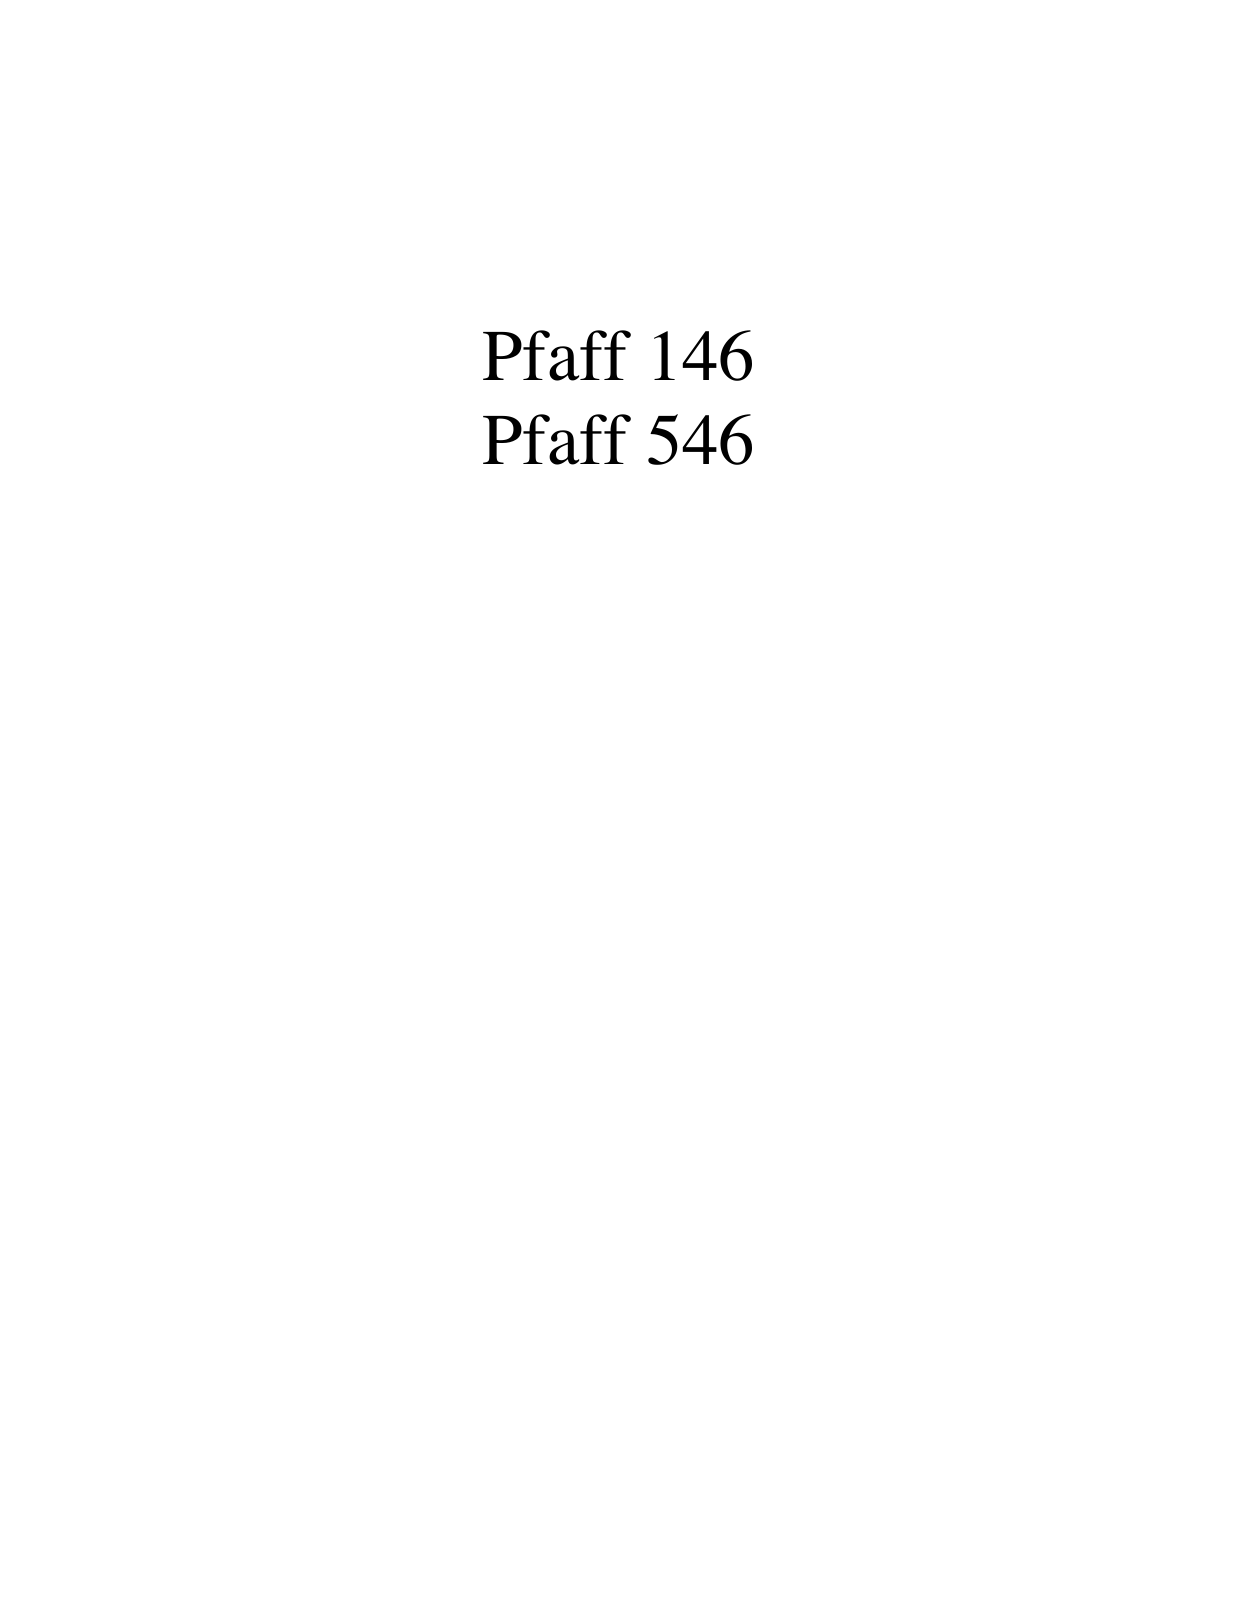 PFAFF 146, 546 Parts List